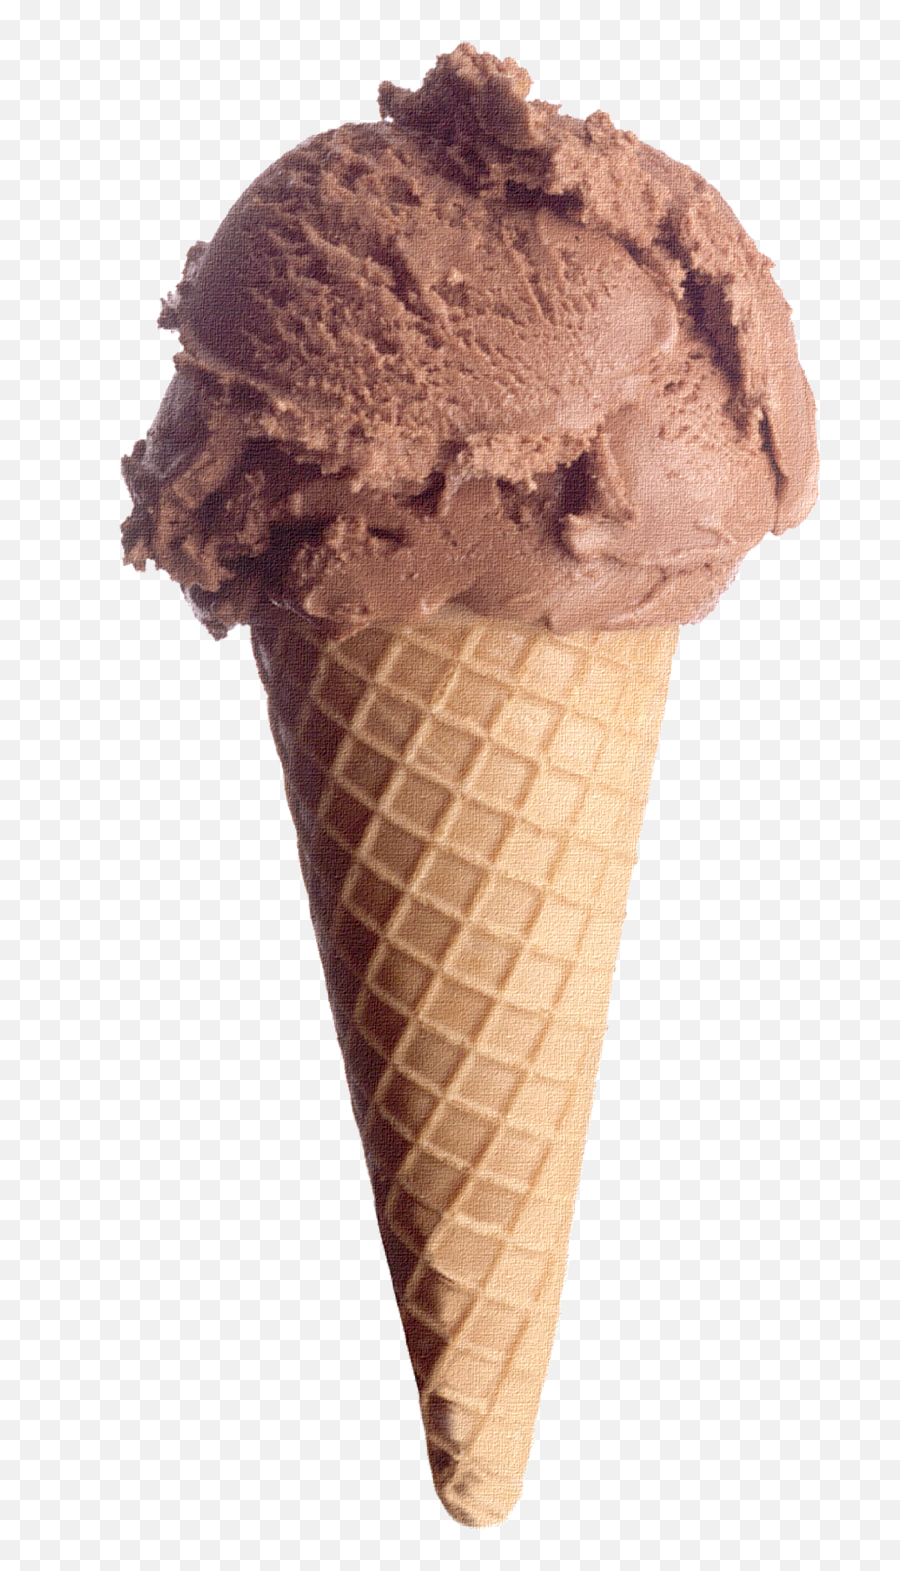 Chocolate Ice Cream - Ice Cream Chocolate Cone Png,Ice Cream Cone Transparent Background